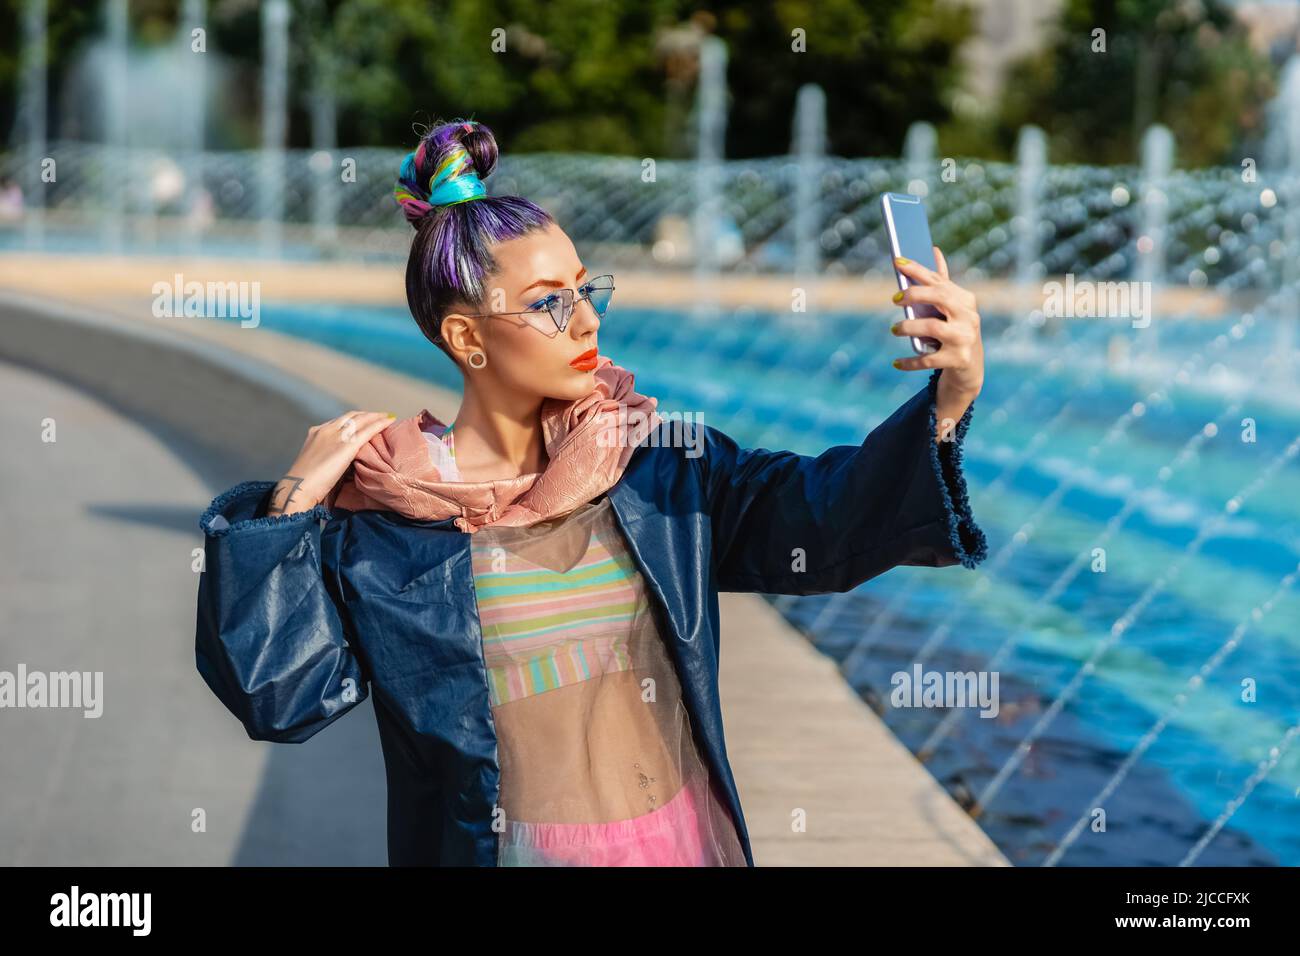 Coole flippige junge Teenager-Frau mit trendigen Mode-Outfit unter Selfie im Freien Stockfoto